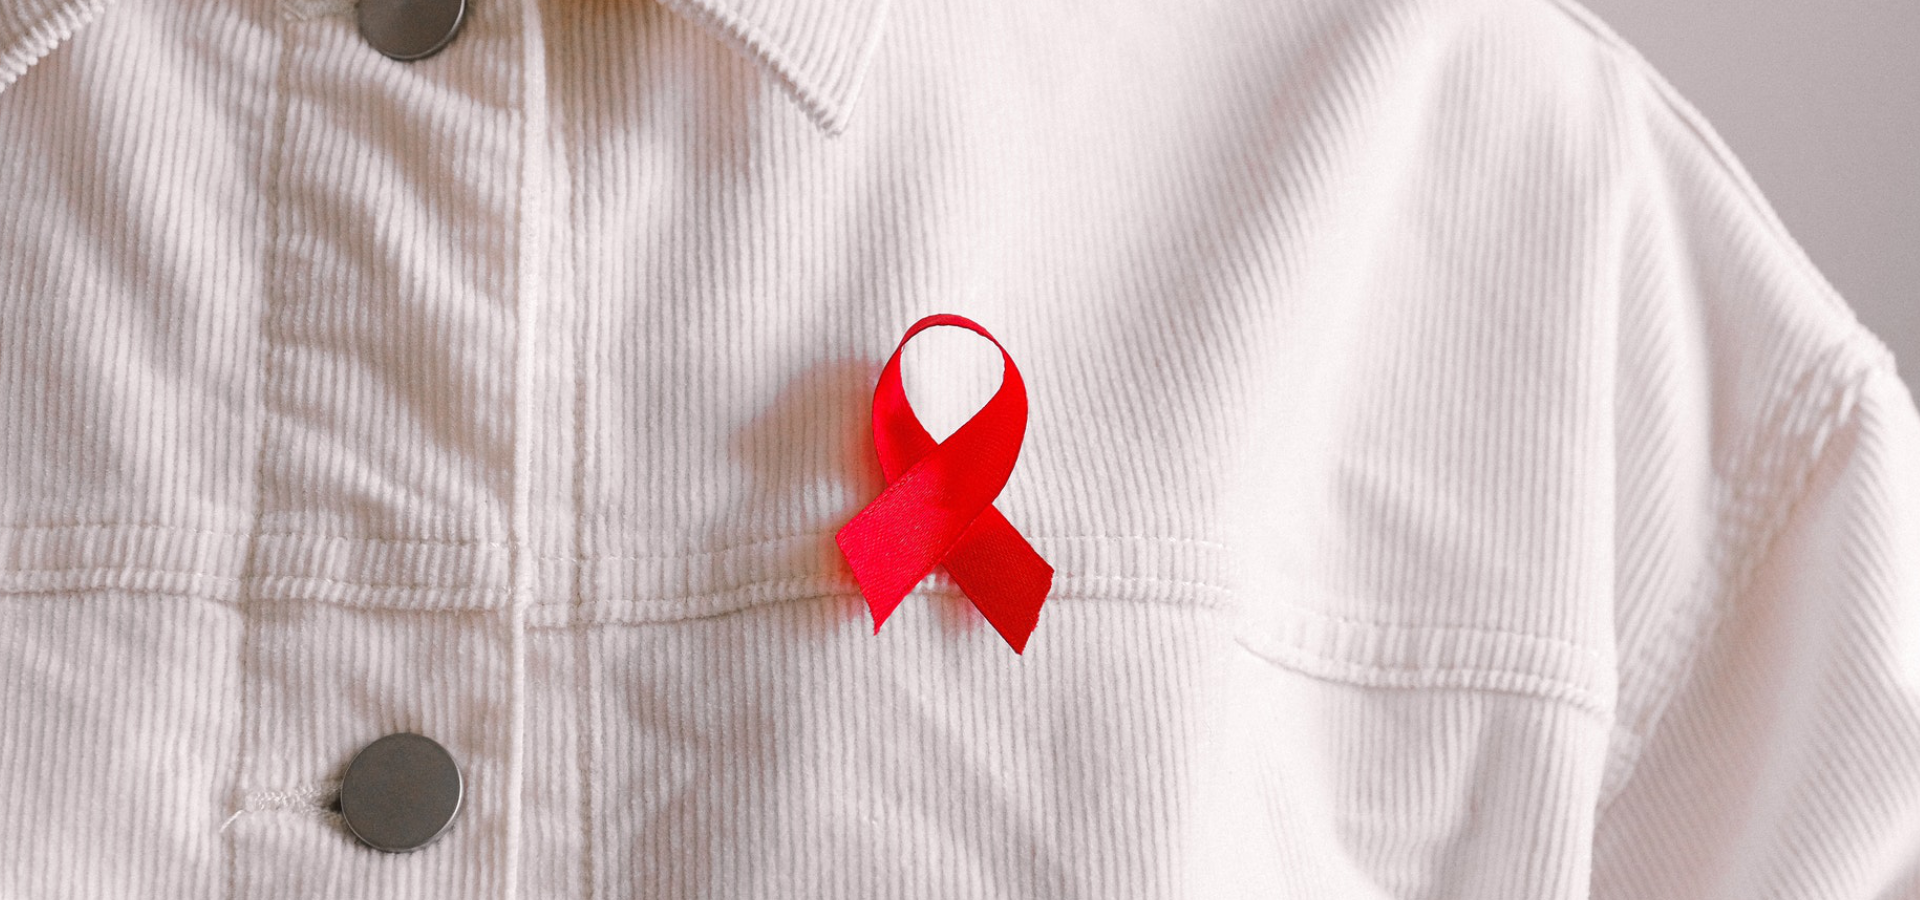 VIH: há espaço para melhorar critérios usados para prescrição da PrEP